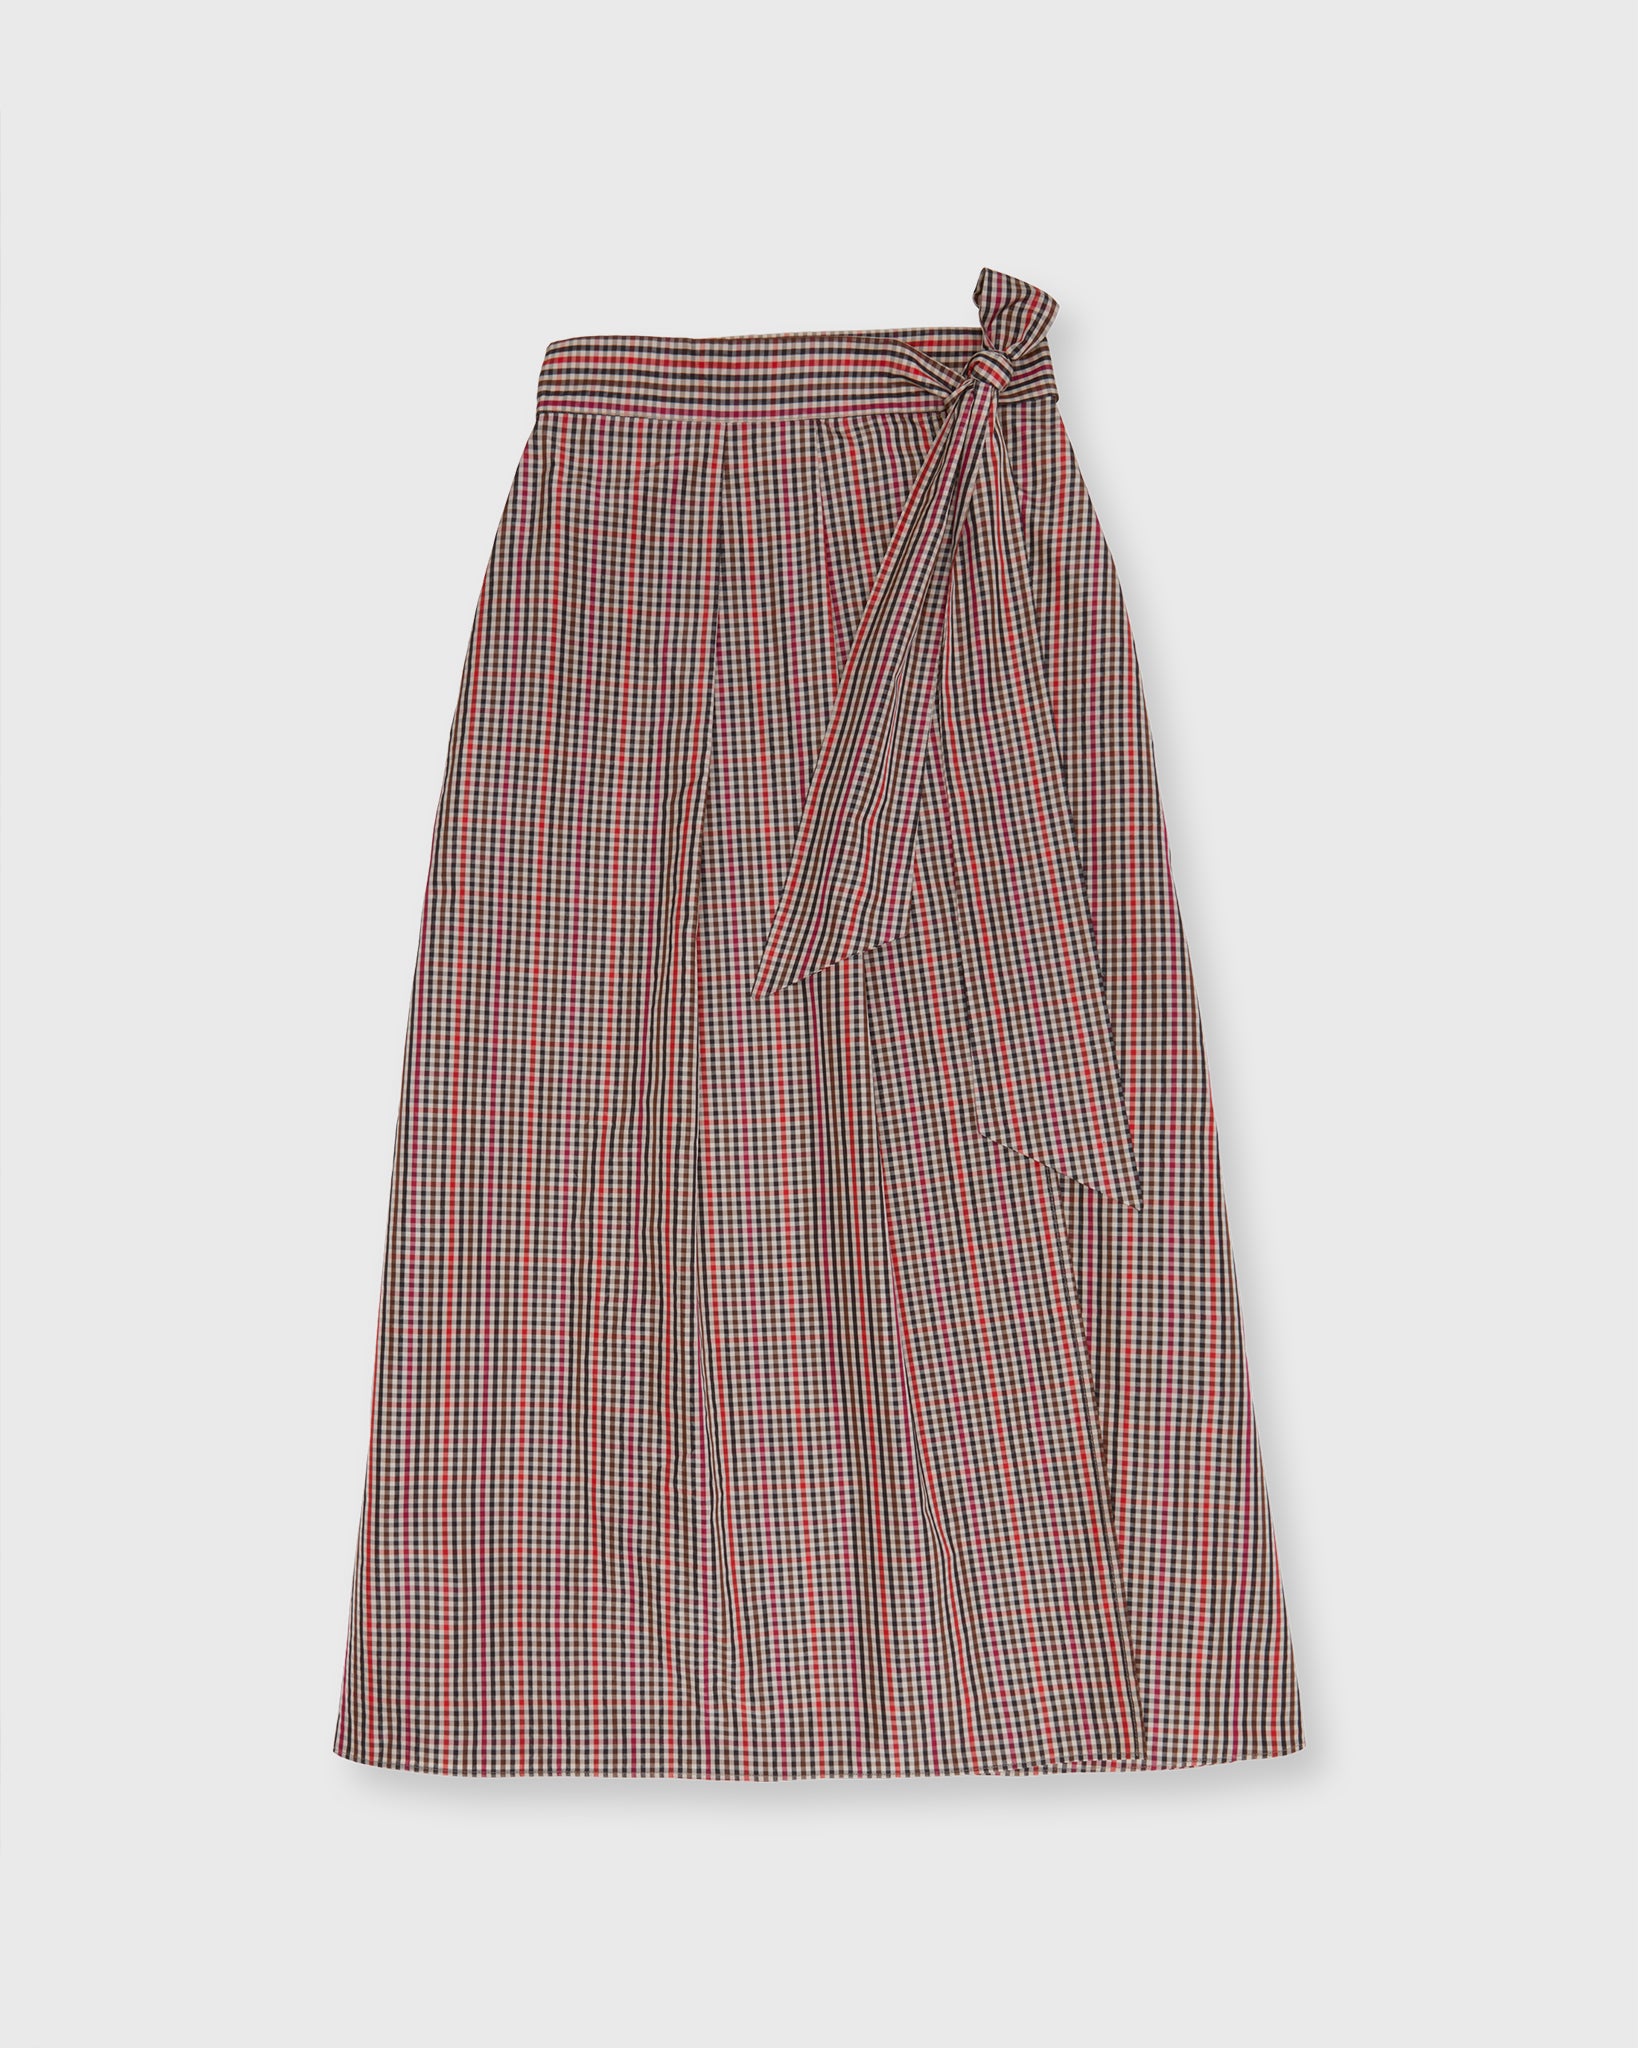 Elana Wrap Skirt in Red/Brown Check Taffeta